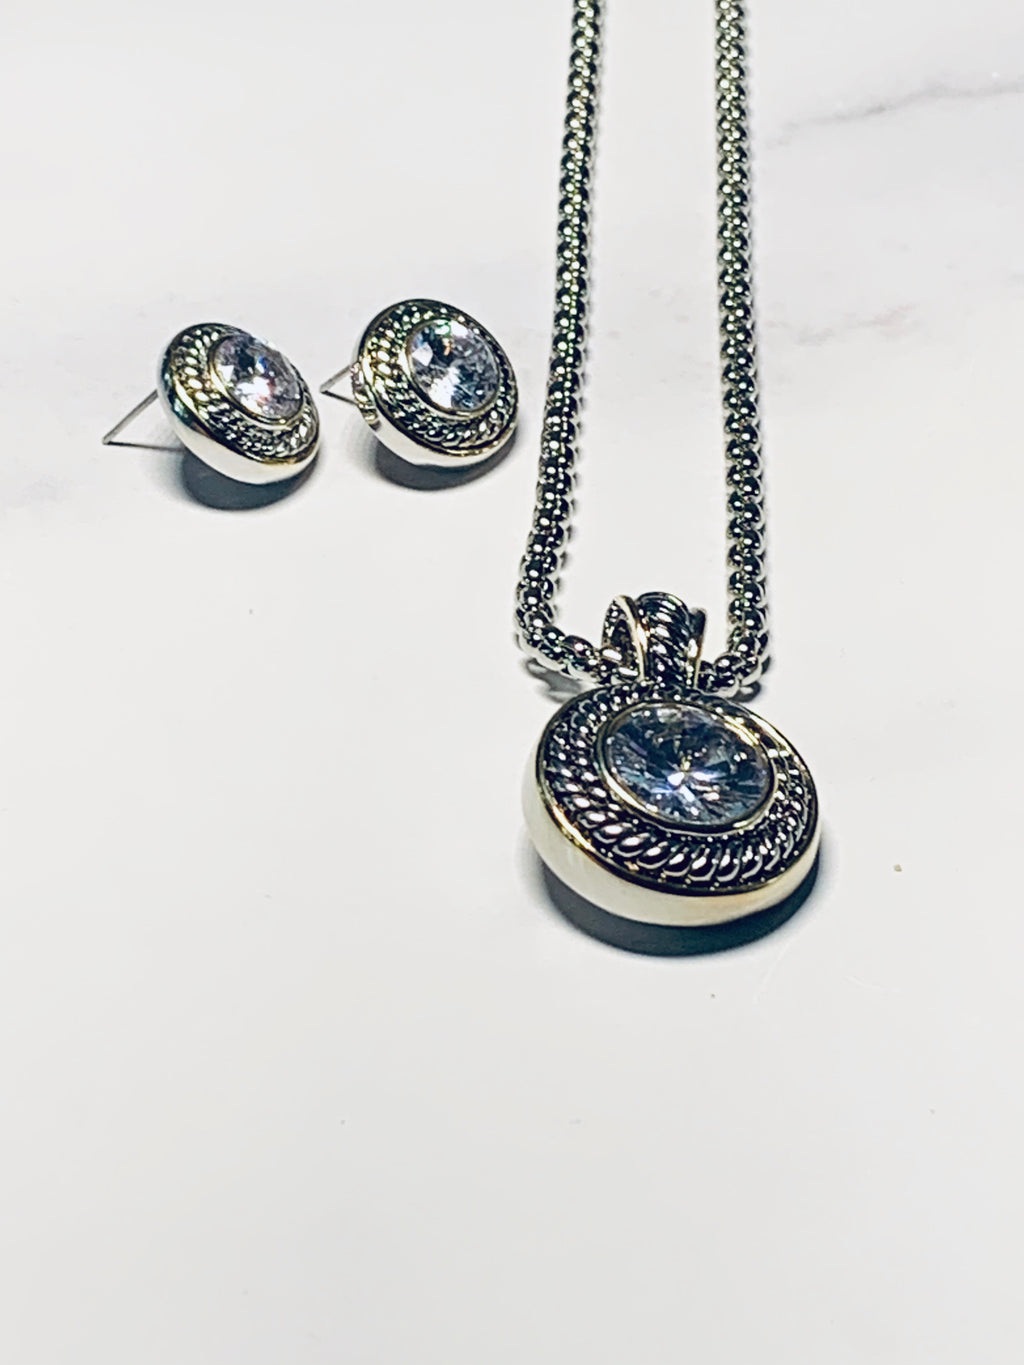 Designer style necklace sets